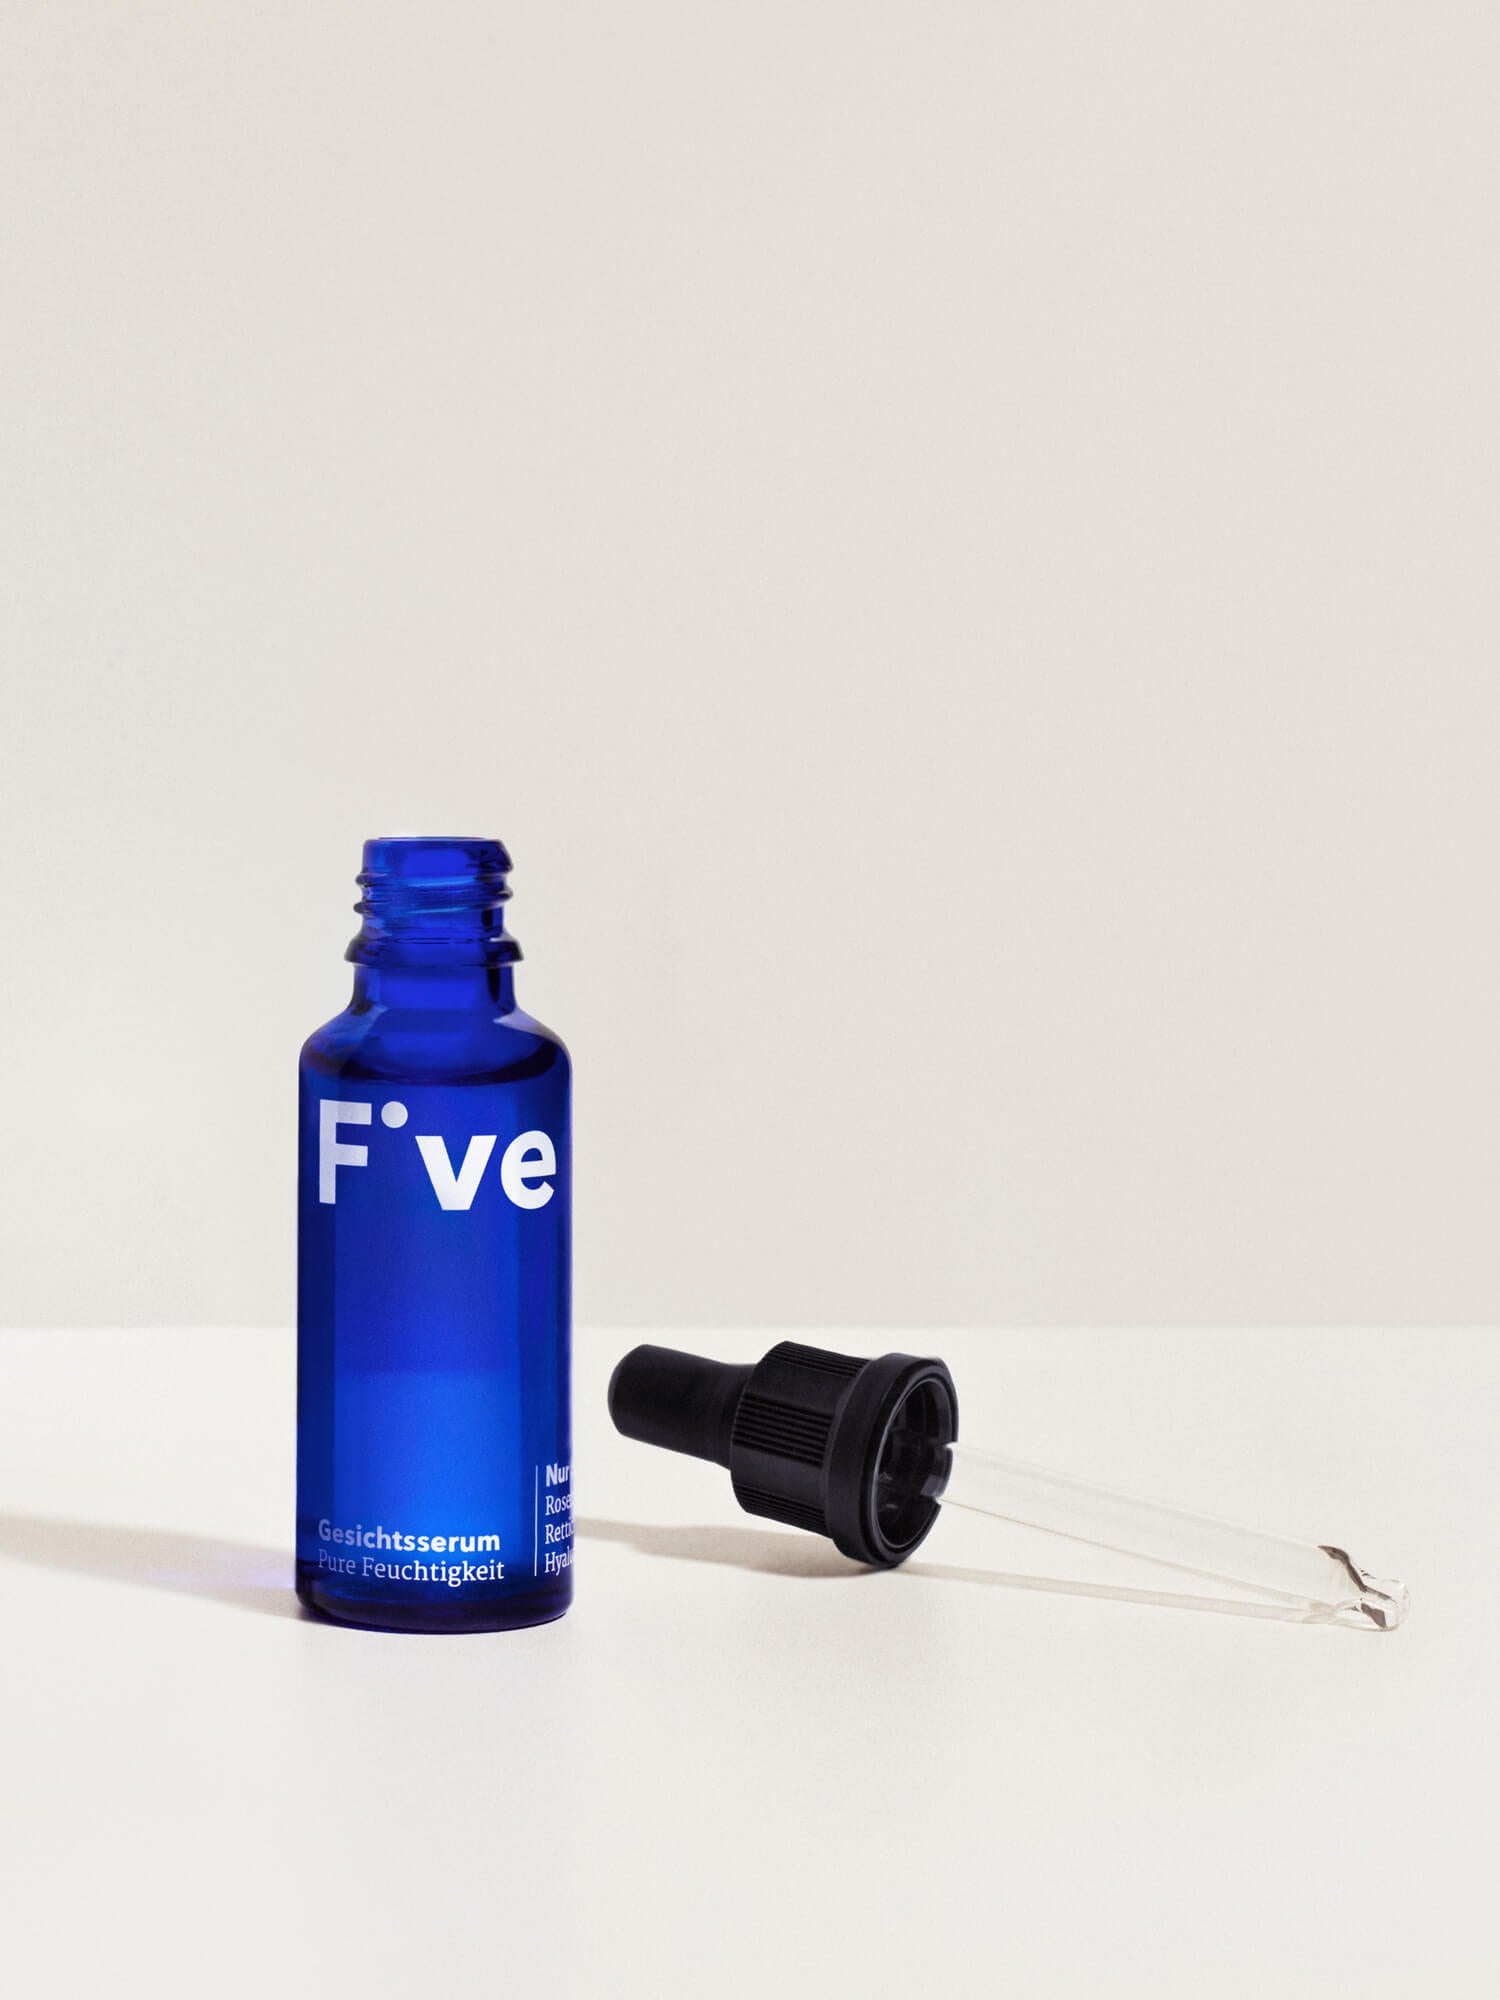 Five Gesichtsserum – Nur 5 Inhaltsstoffe | Five Skincare